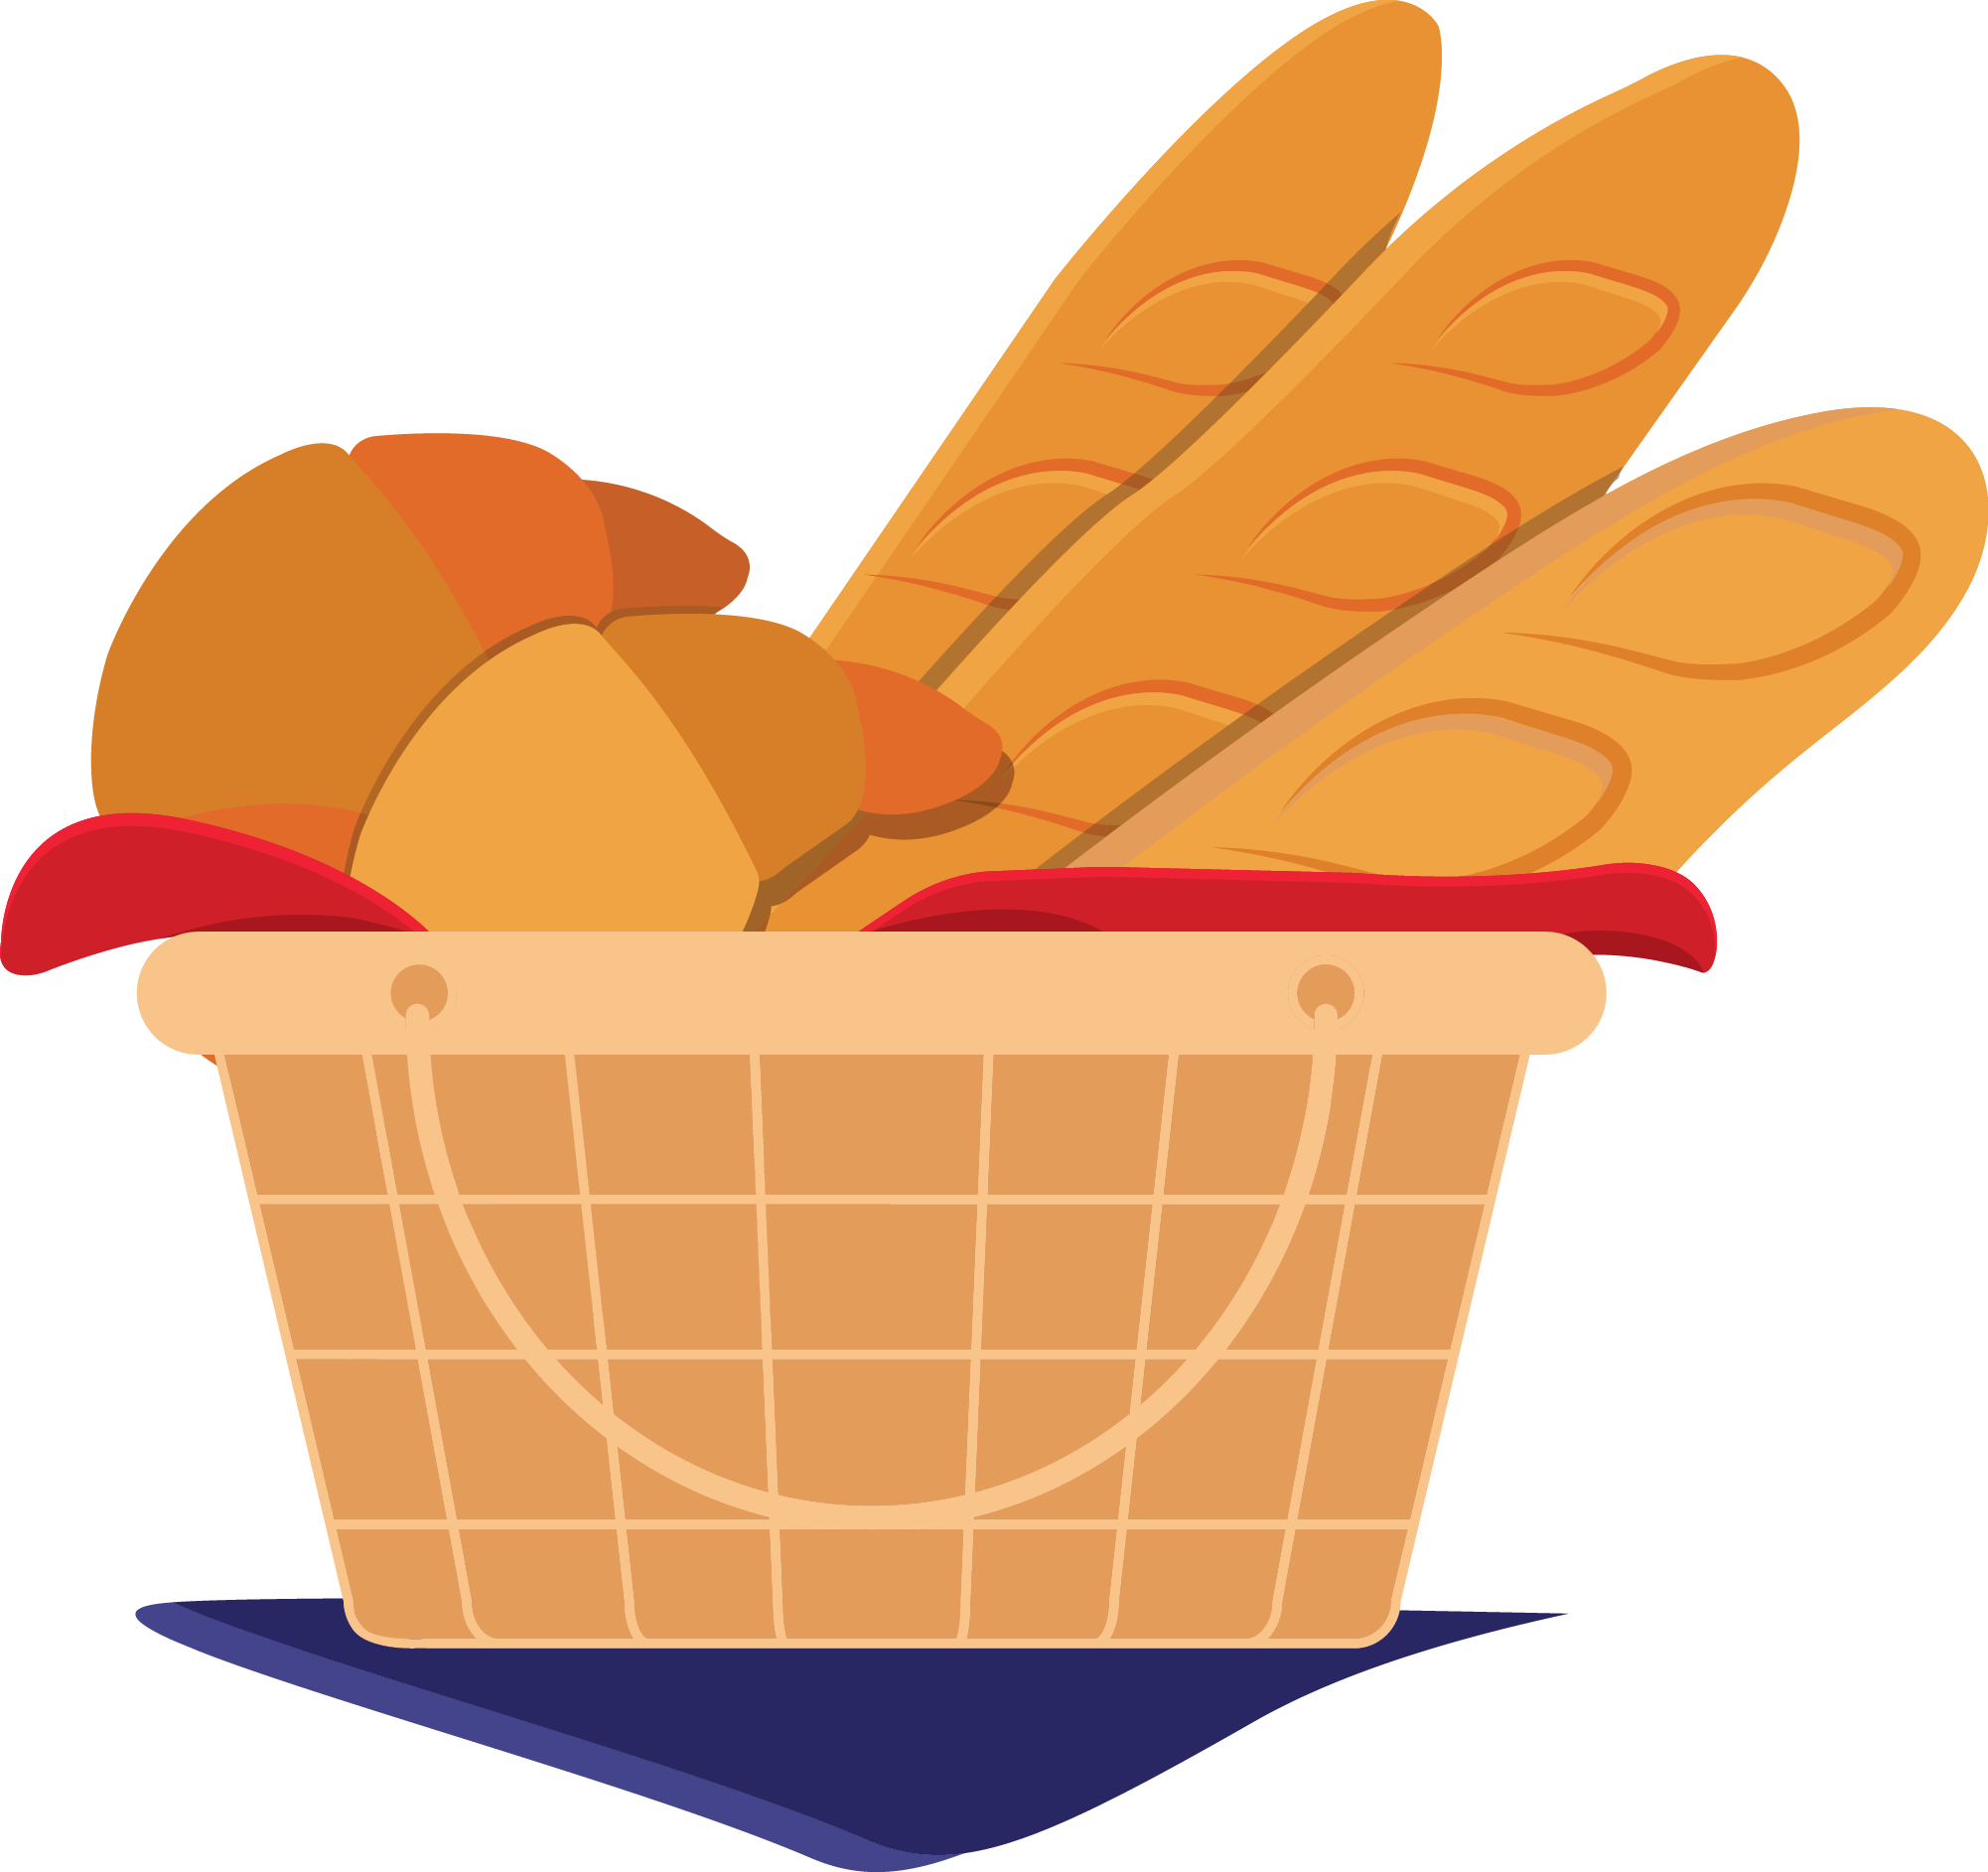 Illustration of bread basket